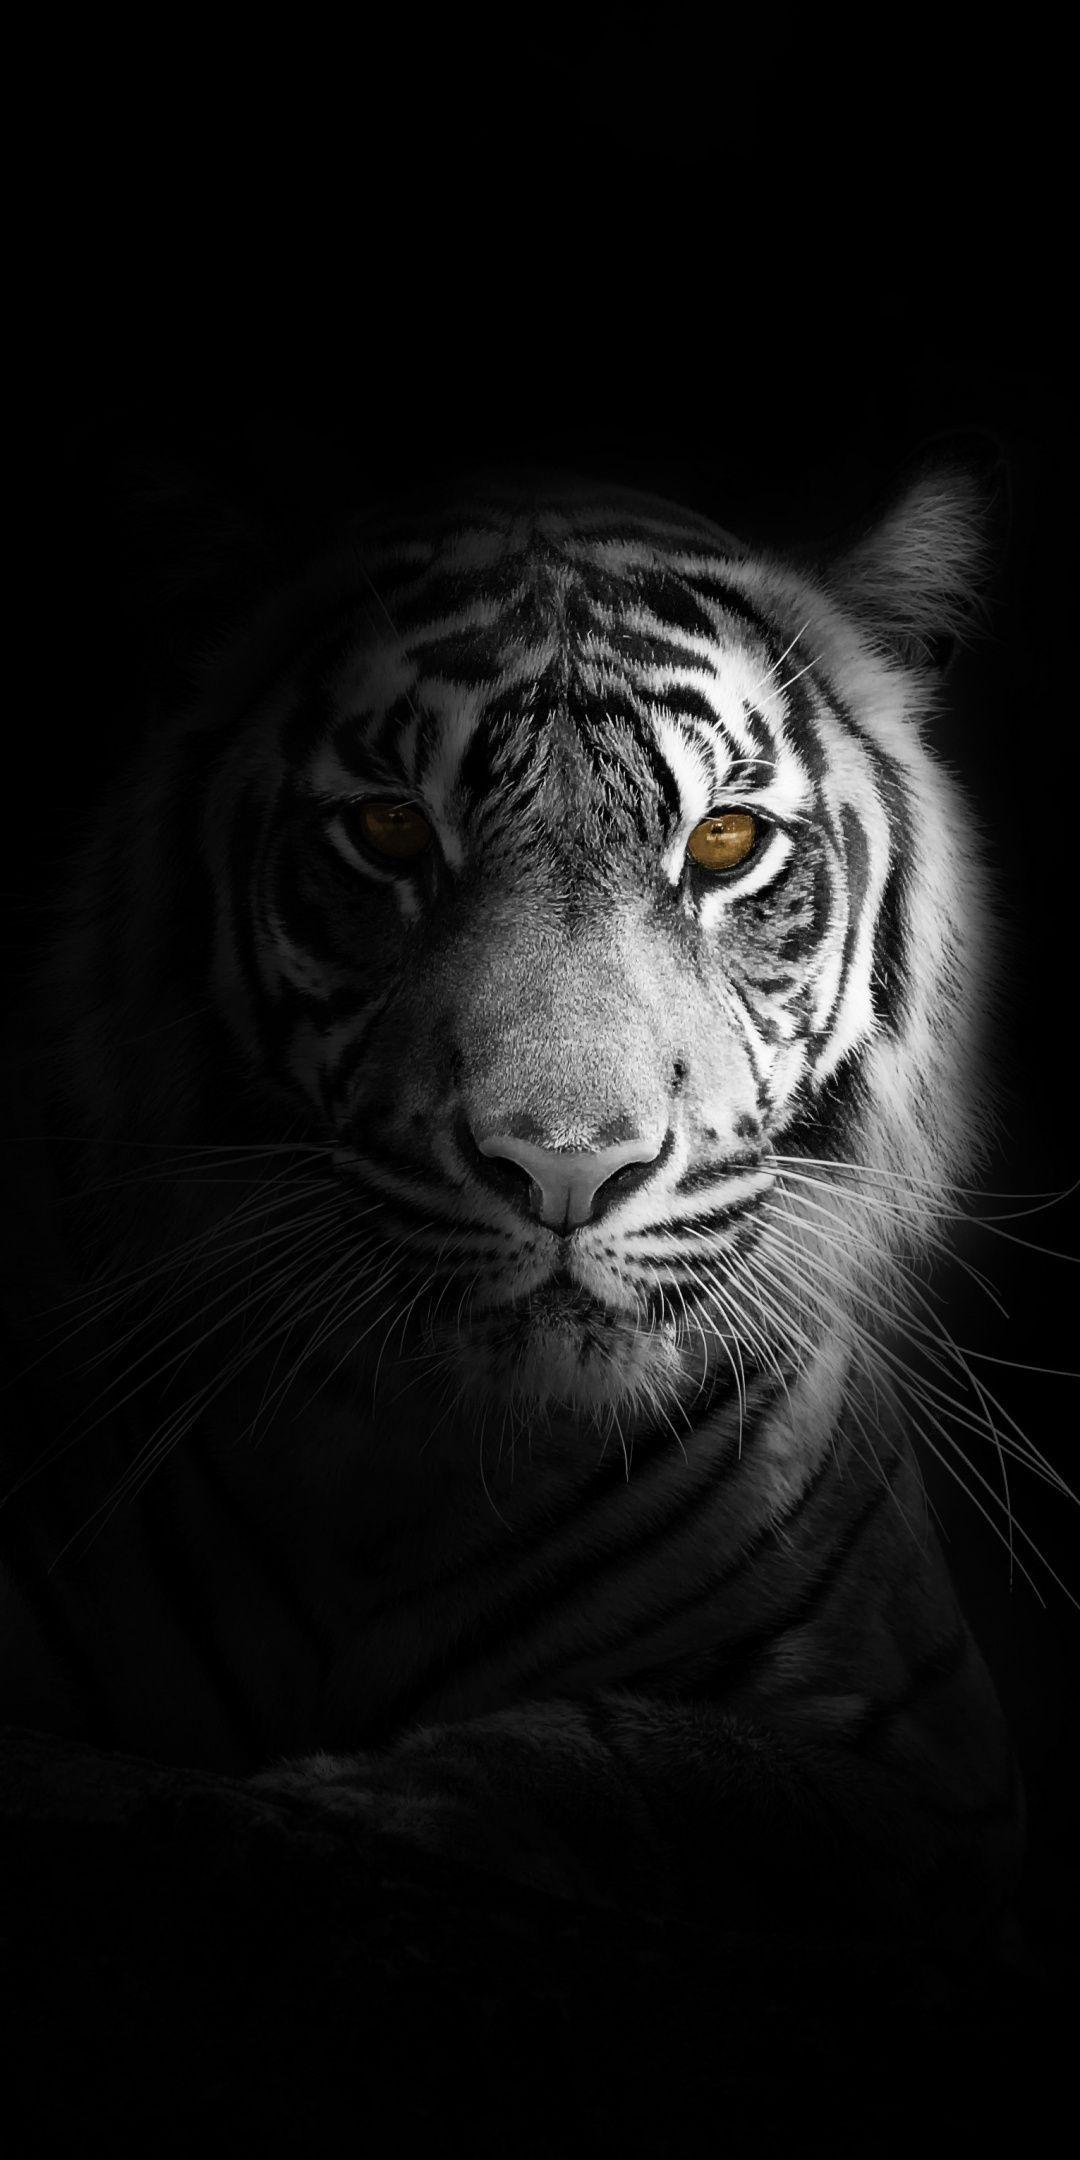 Portrait, minimal, white tiger, dark Wallpaper #darkwallpaperiphone Portrait, minimal, white tiger, da. Tiger wallpaper, Tiger photography, Tiger wallpaper iphone